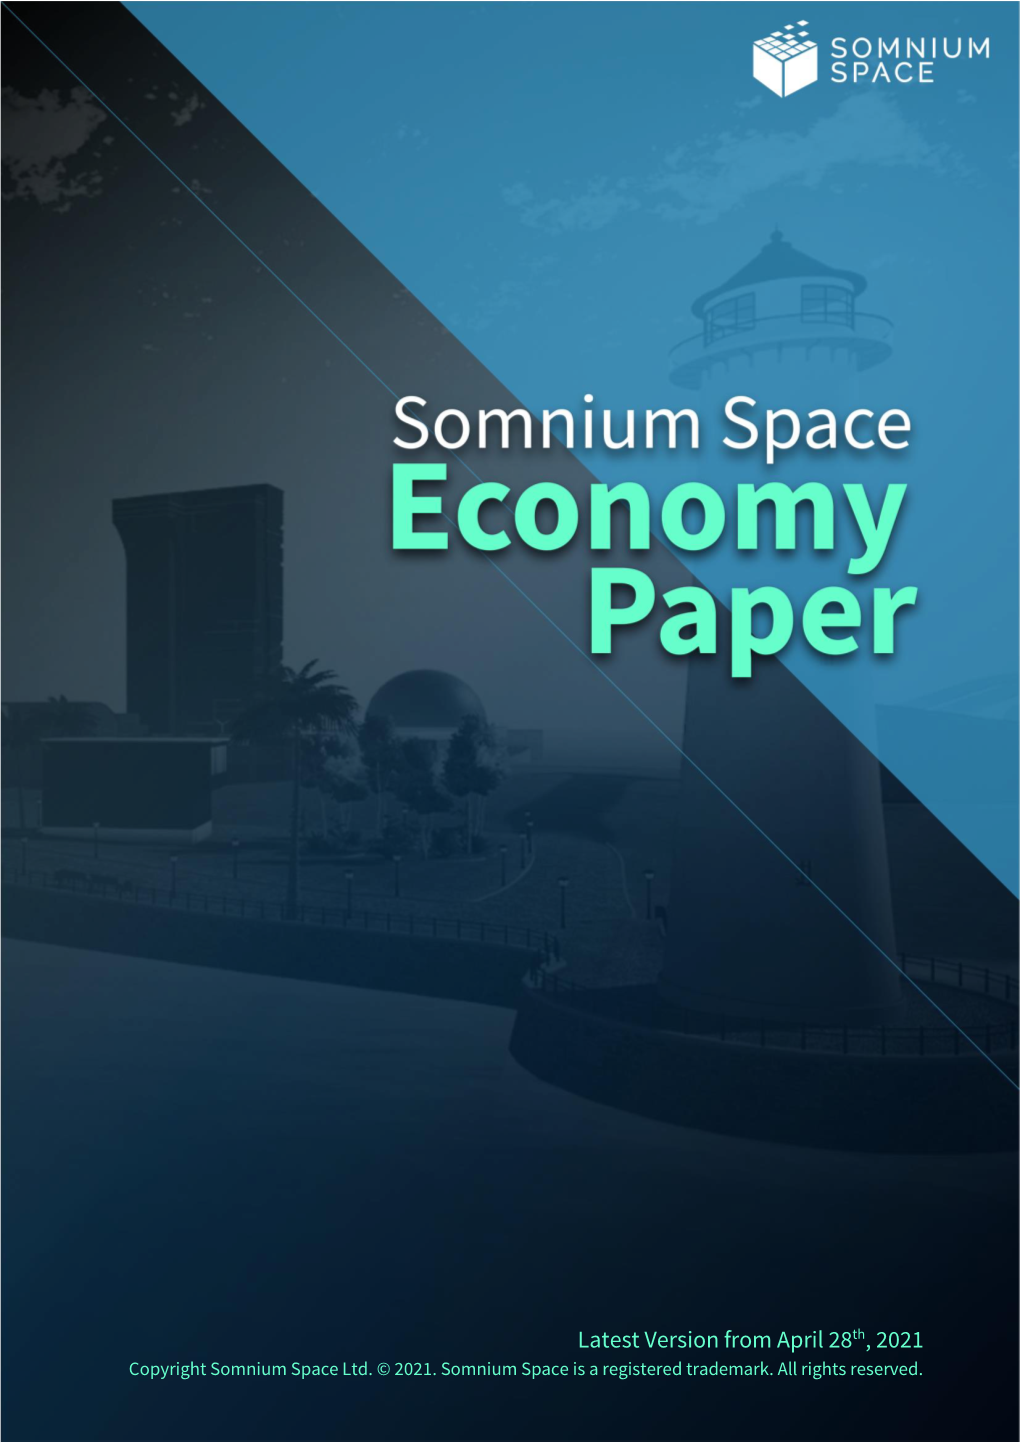 Somnium Space Economy Paper